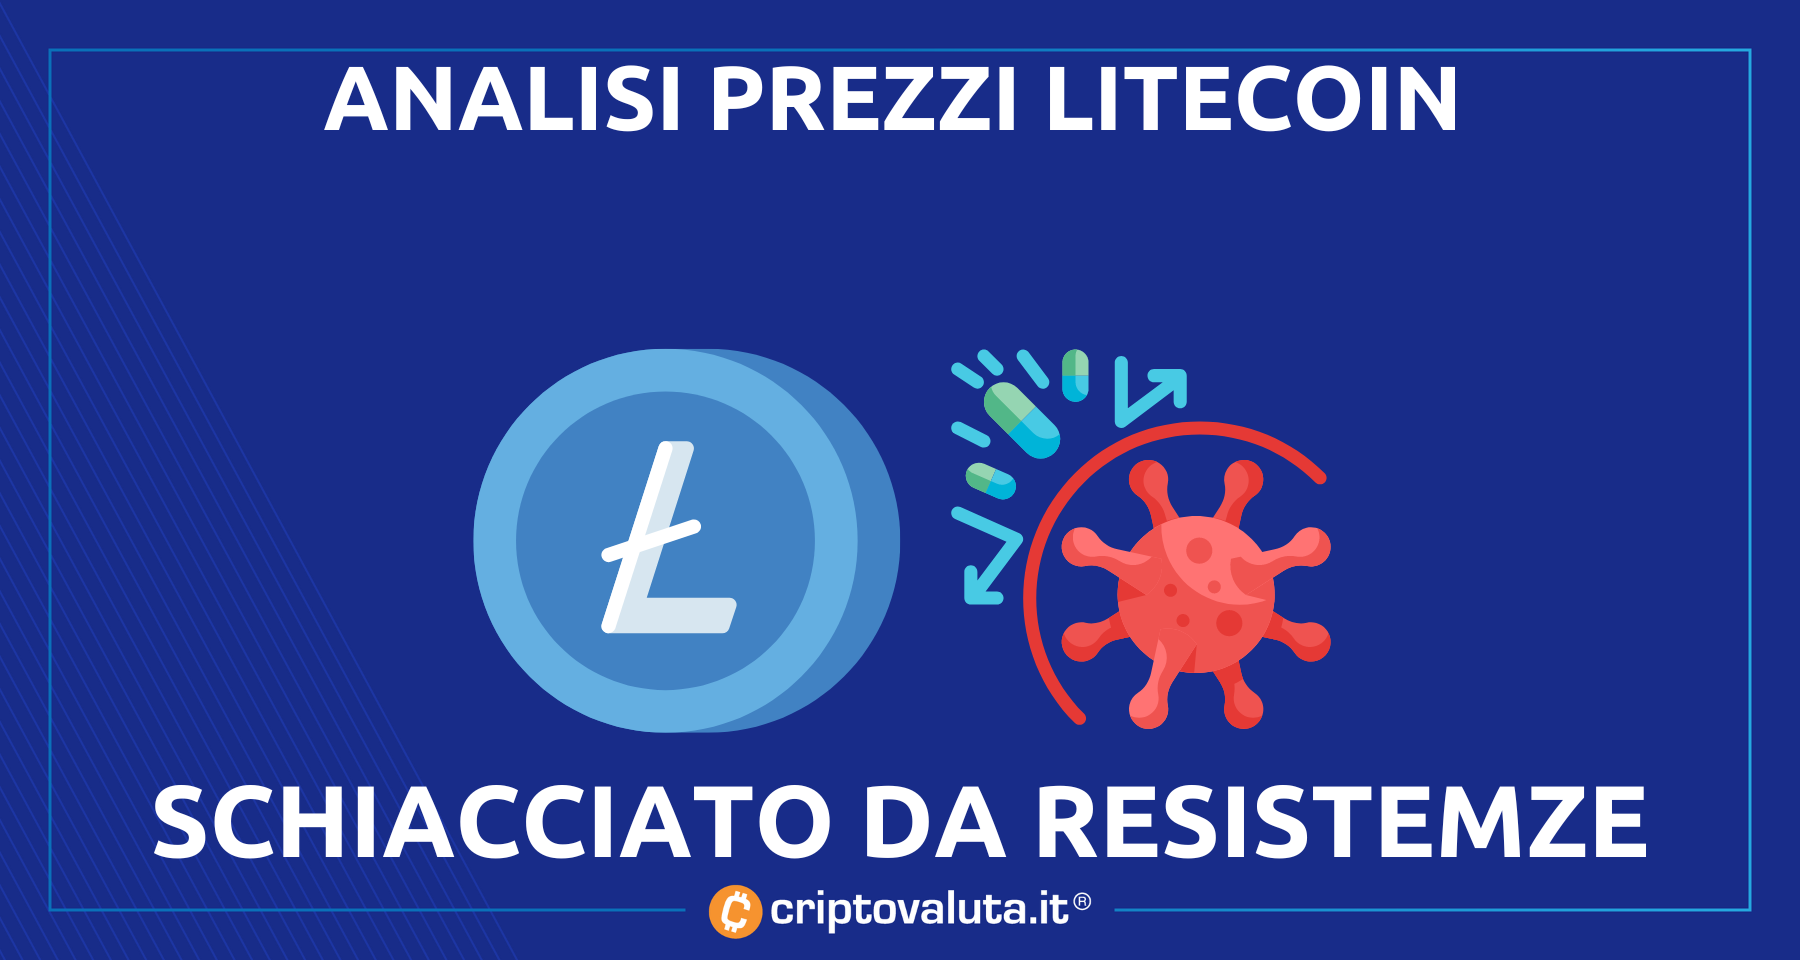 Analisi prezzi Litecoin | $LTC schiacciato dalle resistenze